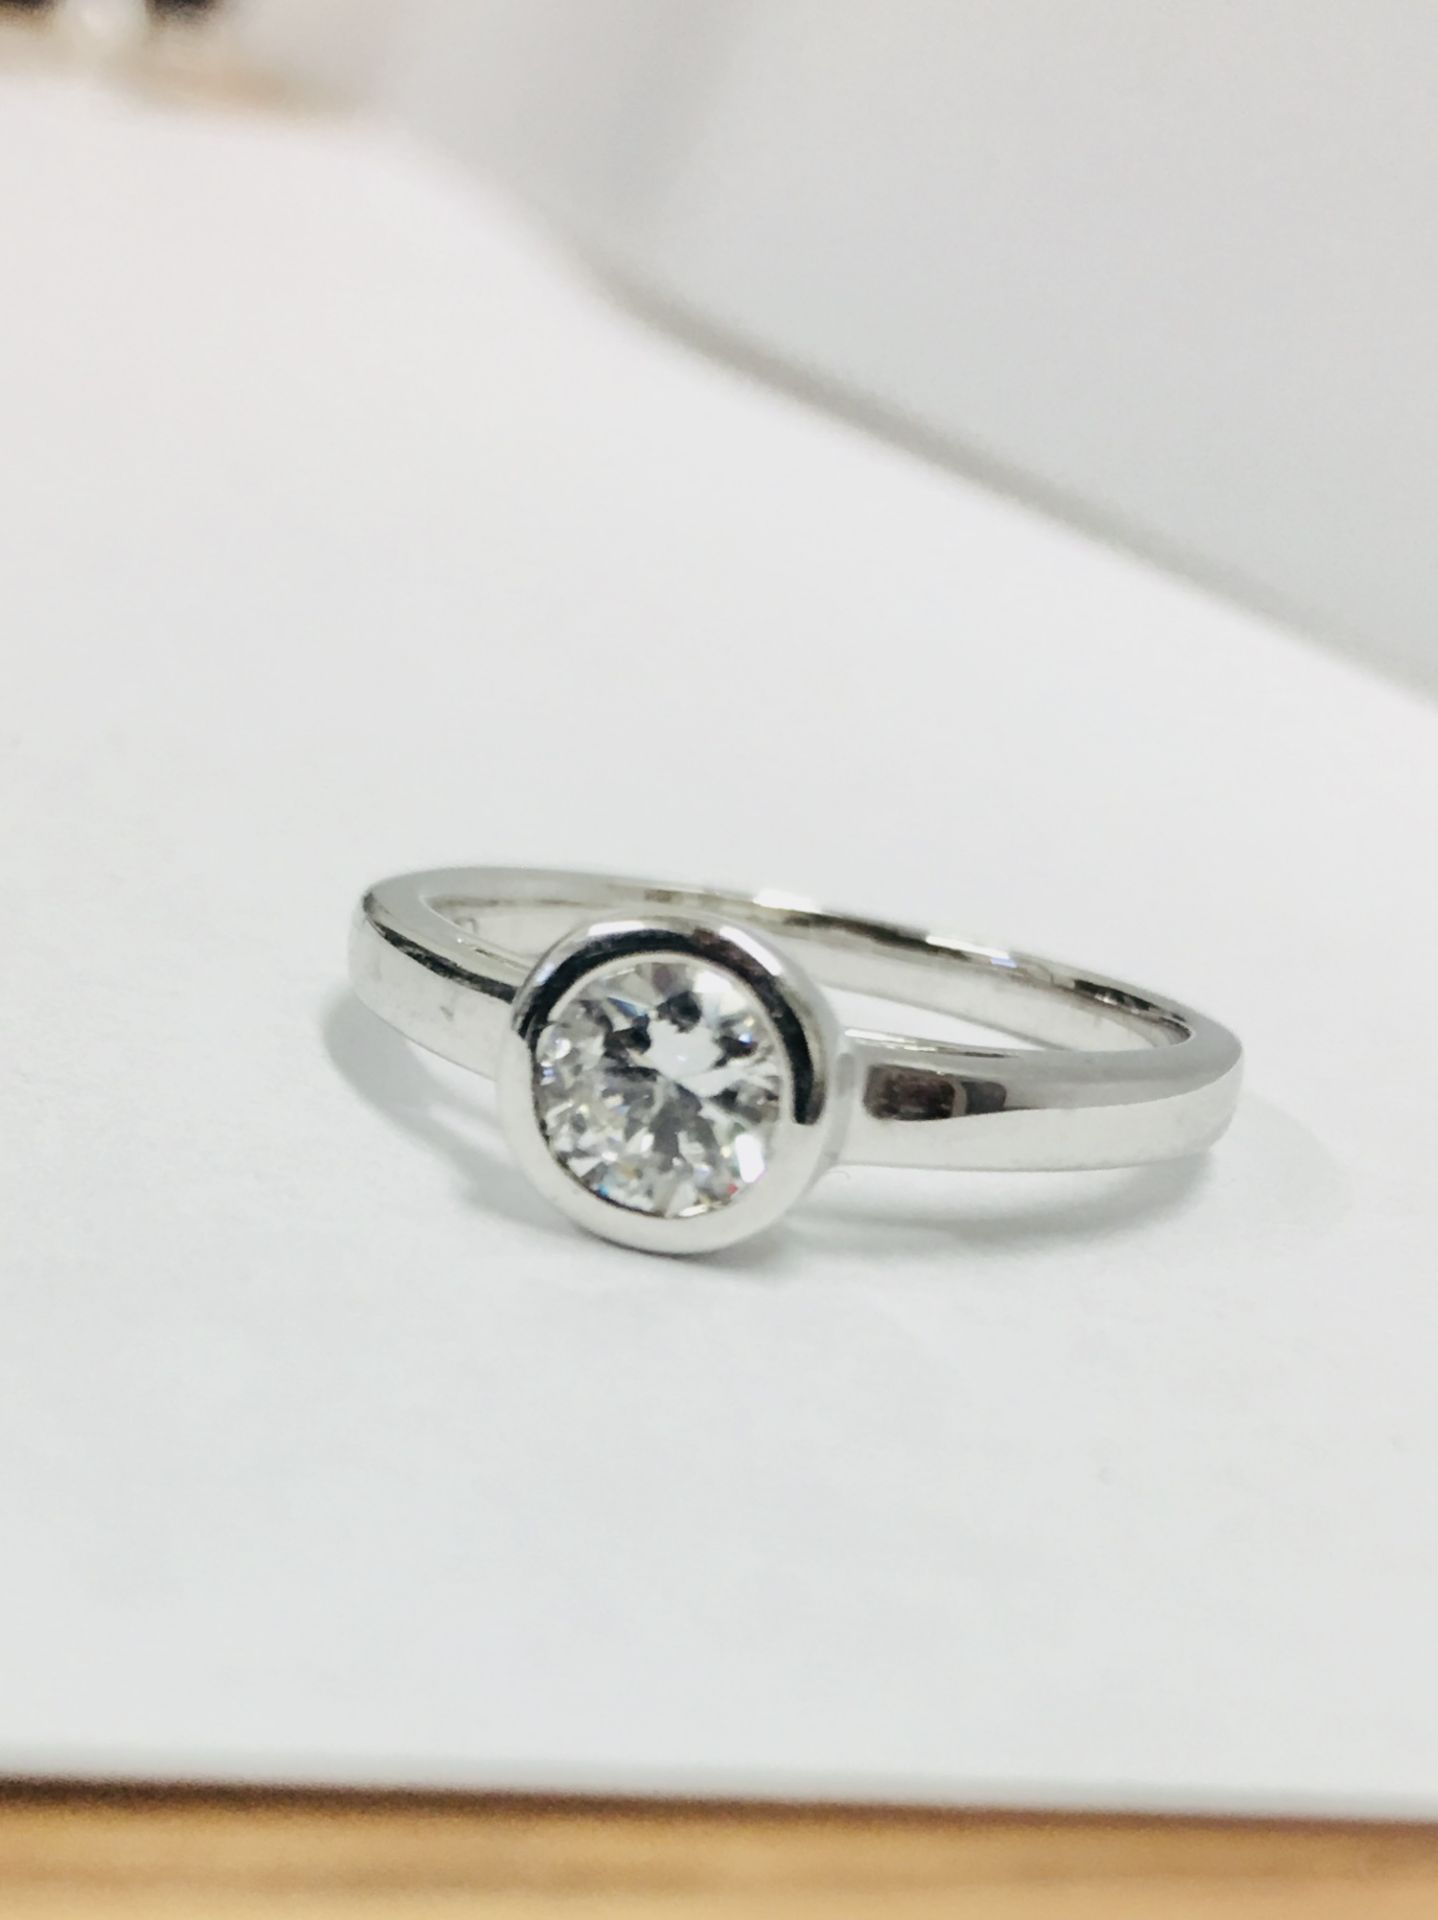 Platinum diamond solitaire ring,0.50ct brilliant cut diamond D colour vs clarity,Platinum rubover - Image 2 of 5